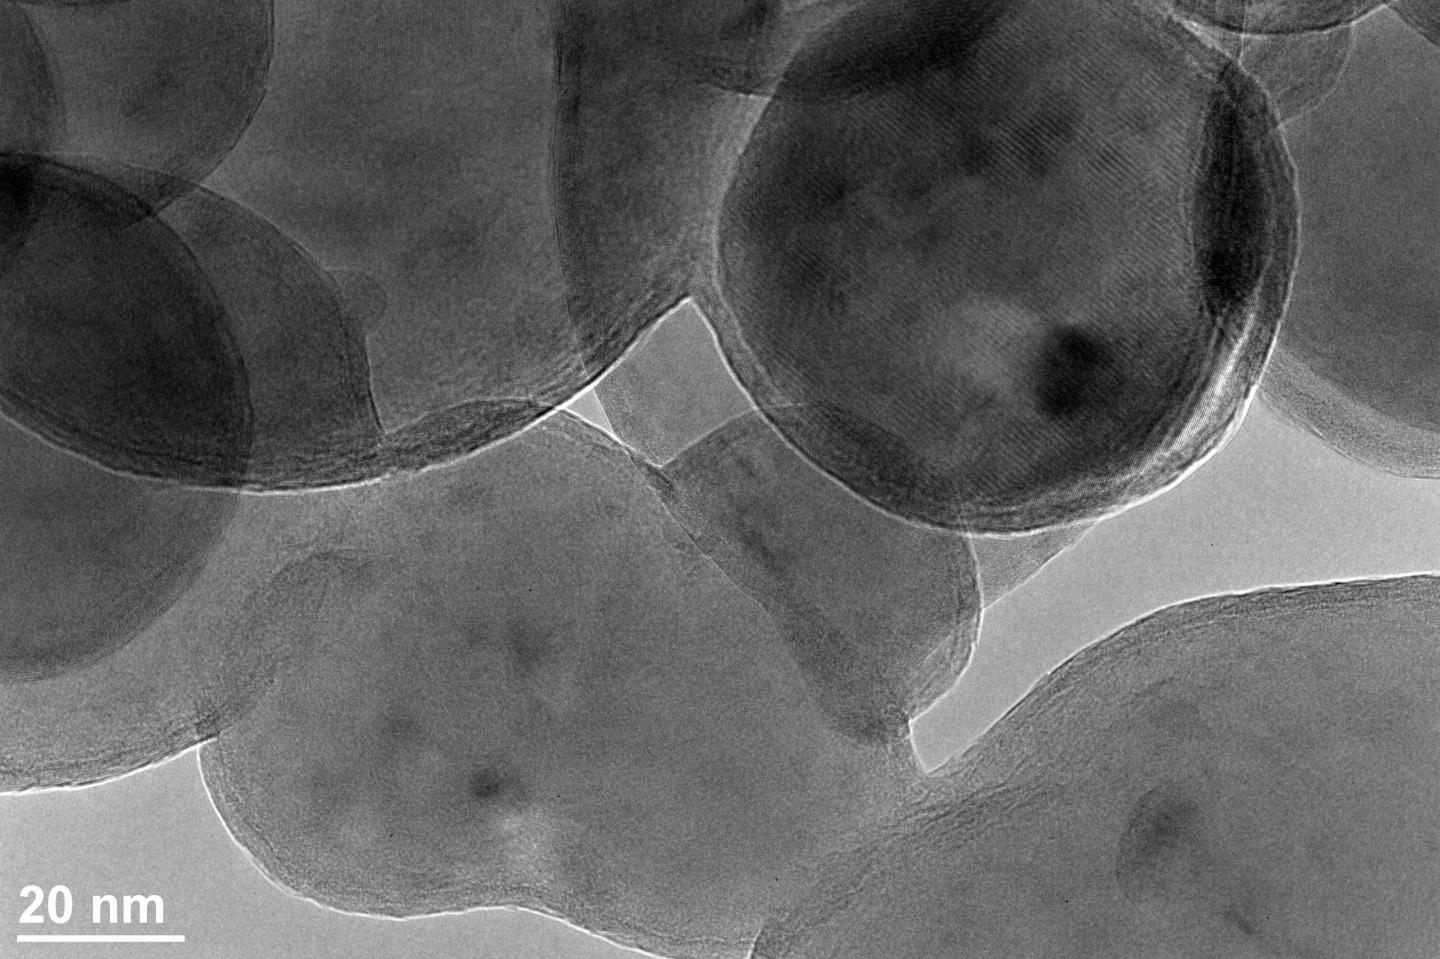 Pristine Al Nanoparticles